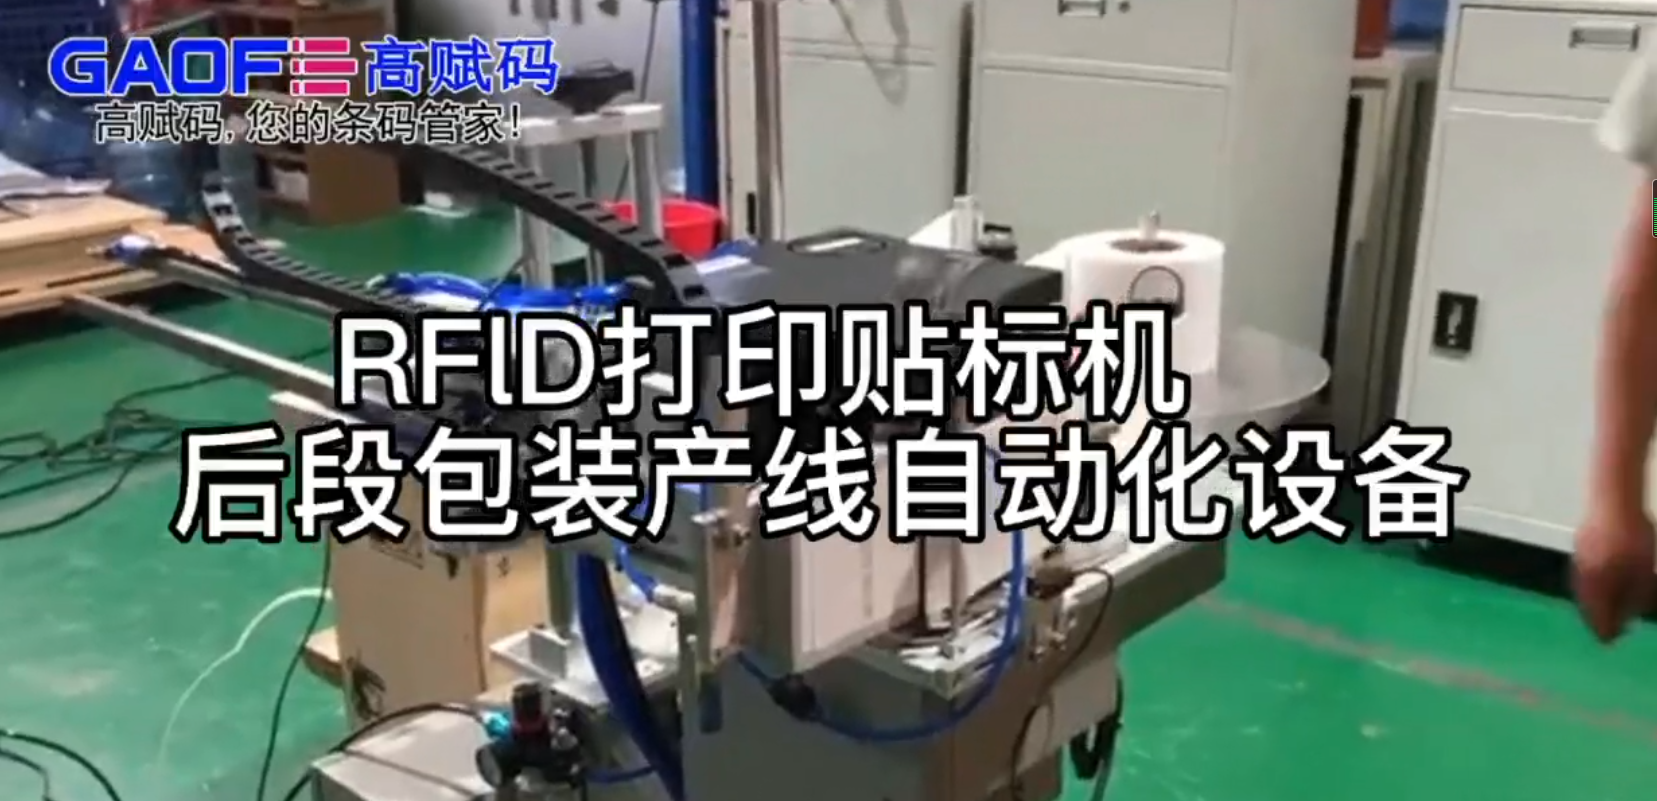 RFlD打印貼標機   后段包裝產線自動化設備